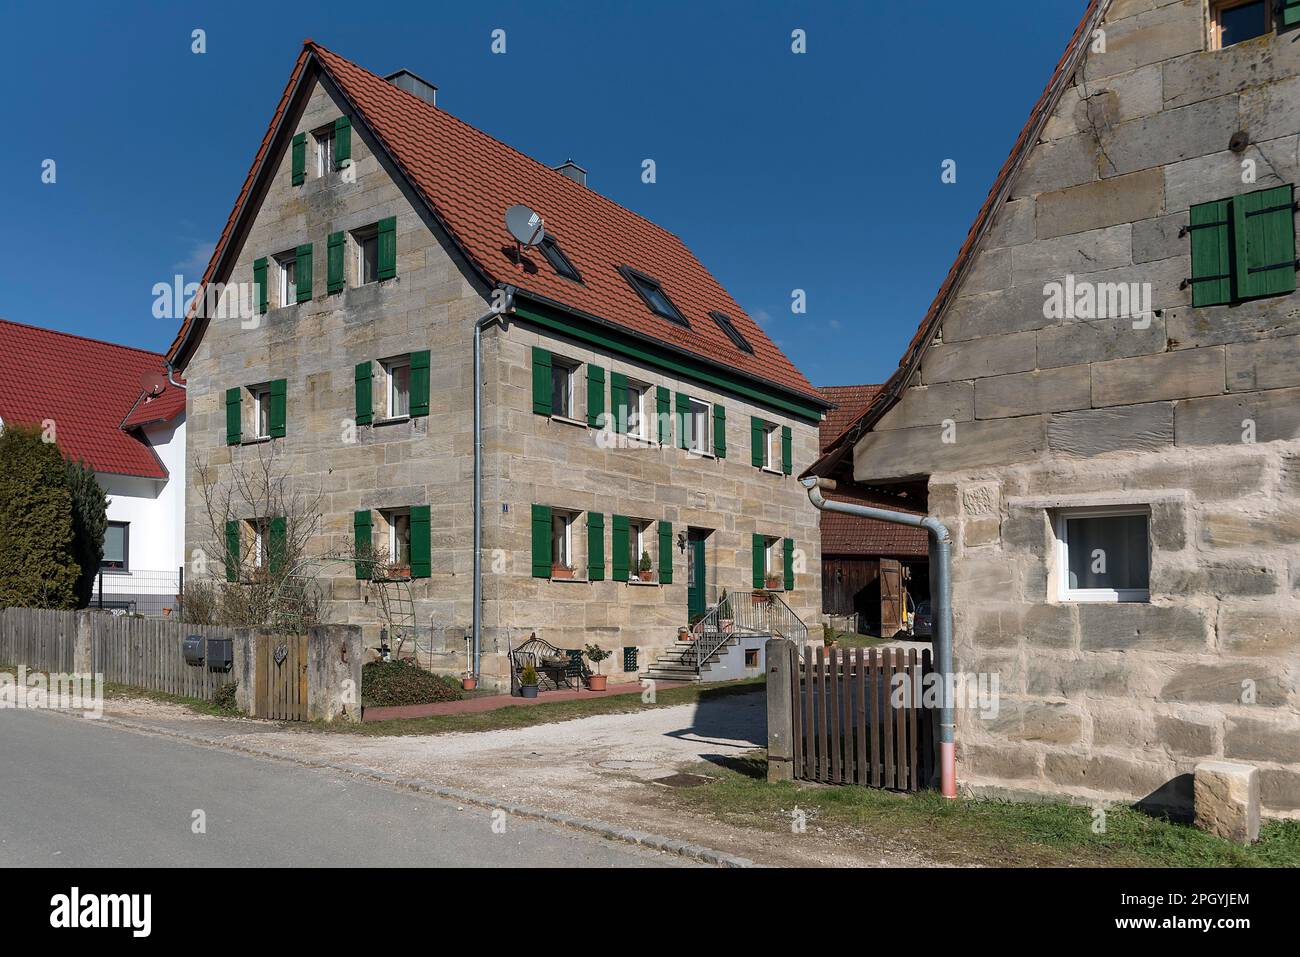 Typisch fränkisches Sandsteinhaus, 19. Jahrhundert, Beerbach, Mittelfrankreich, Bayern, Deutschland Stockfoto